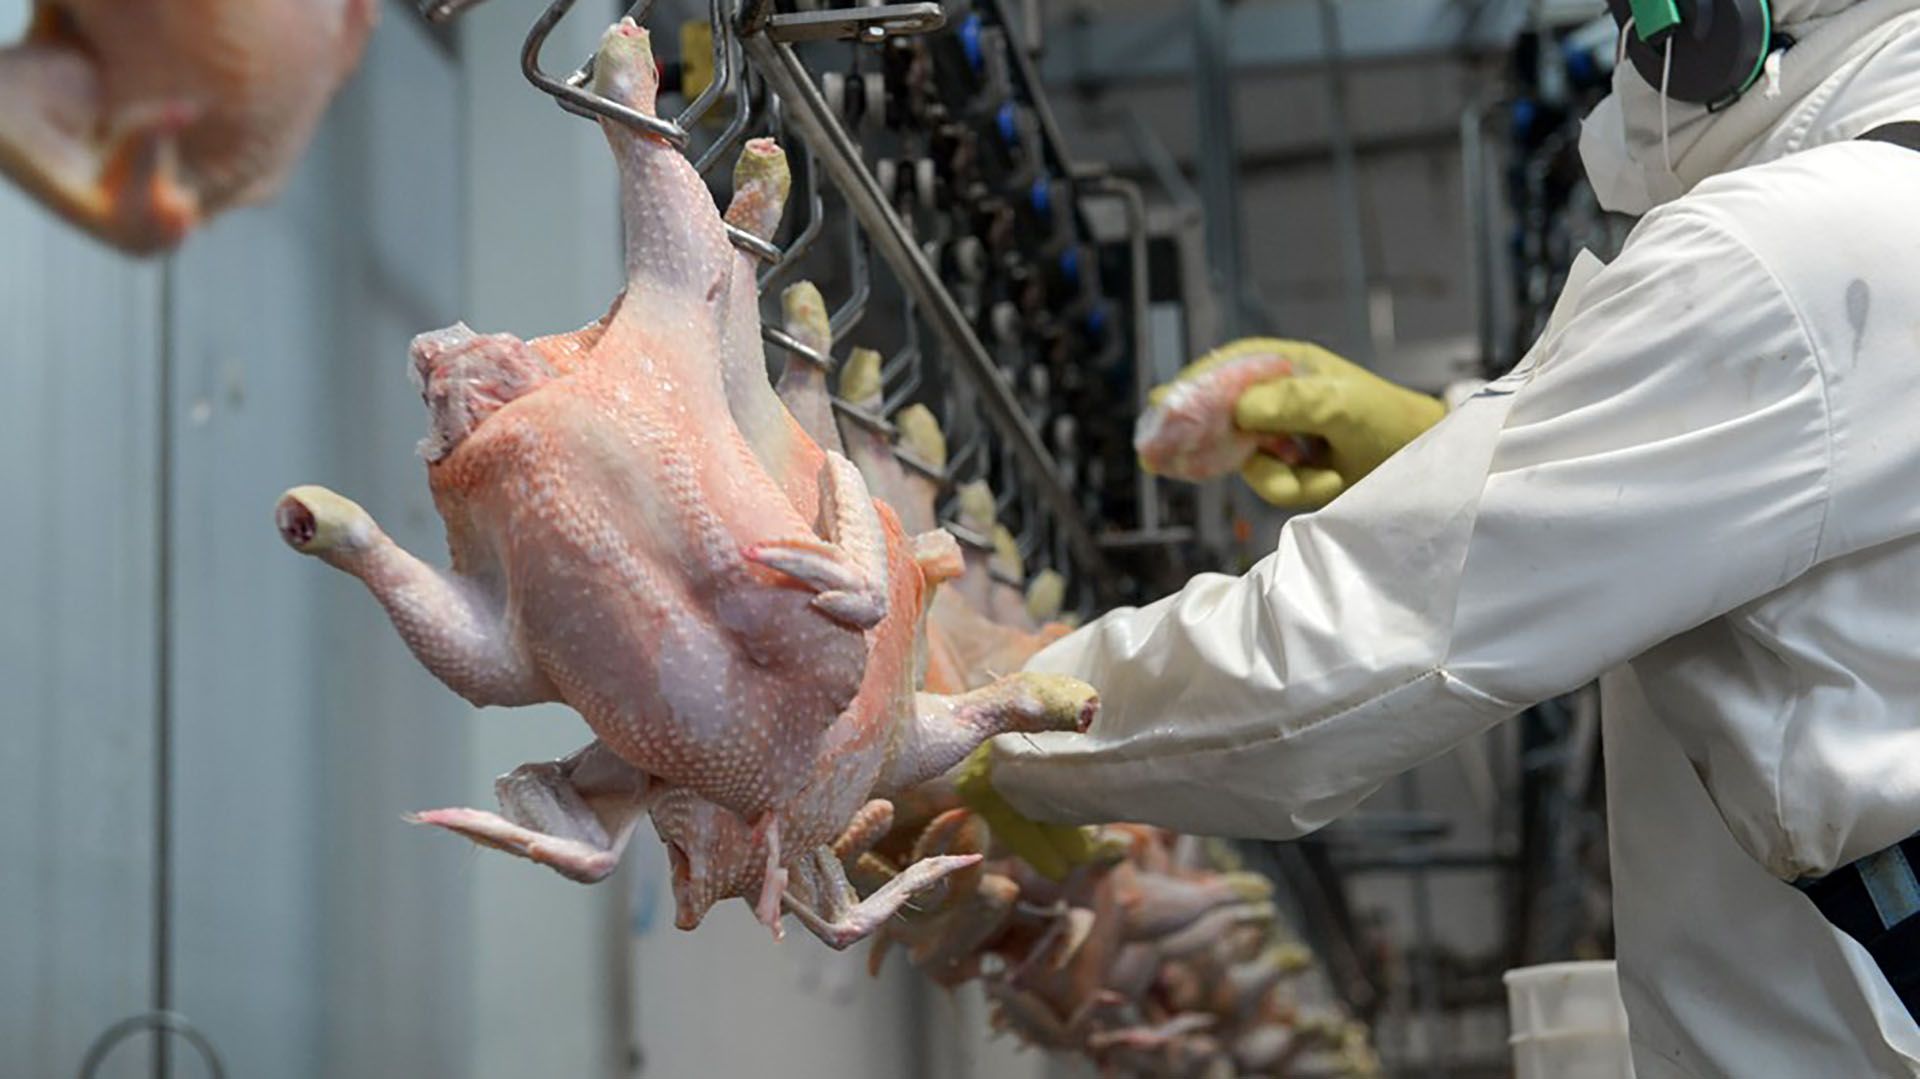 Veracruz es el mayor productor de pollo de México, con 74 mil 210 toneladas de producción en el primer bimestre del año. (Cuartoscuro)